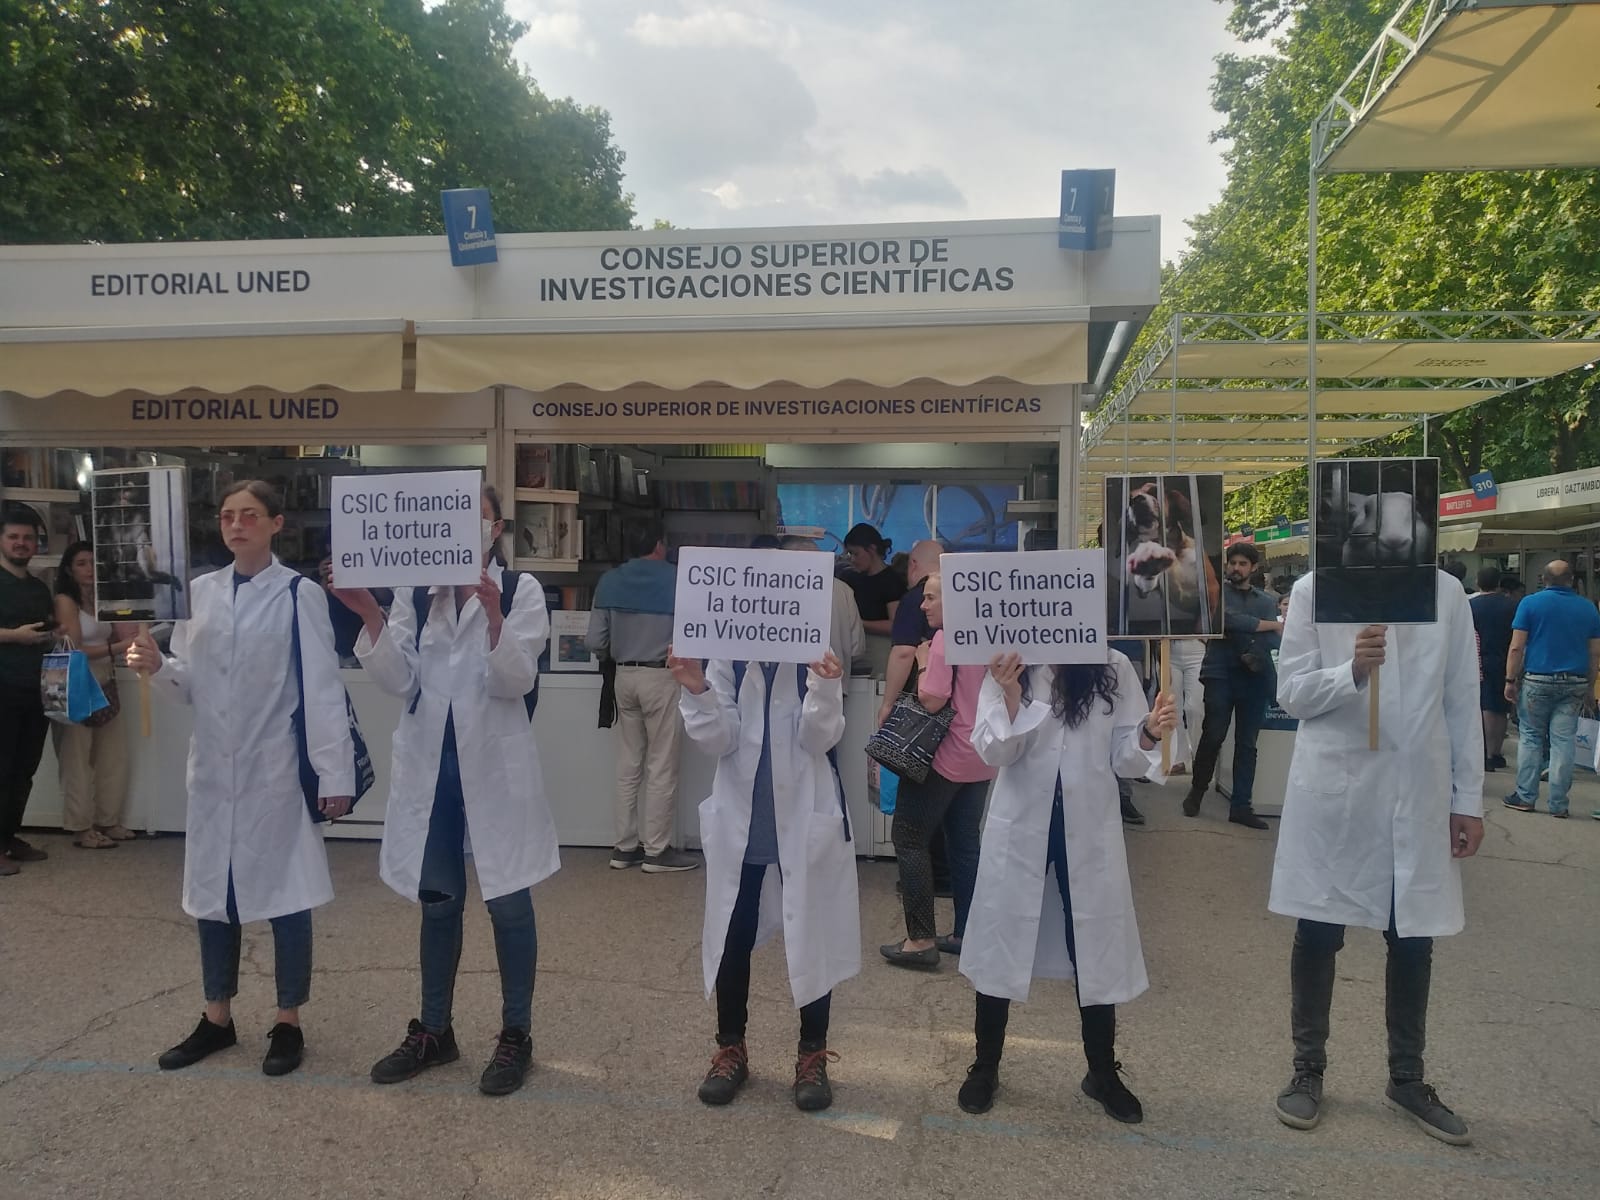 Fila de activistas con batas blancas y carteles denunciando la colaboración entre el CSIV y Vivotecnia, delante del puesto del CSIC en la Feria del Libro de Madrid.